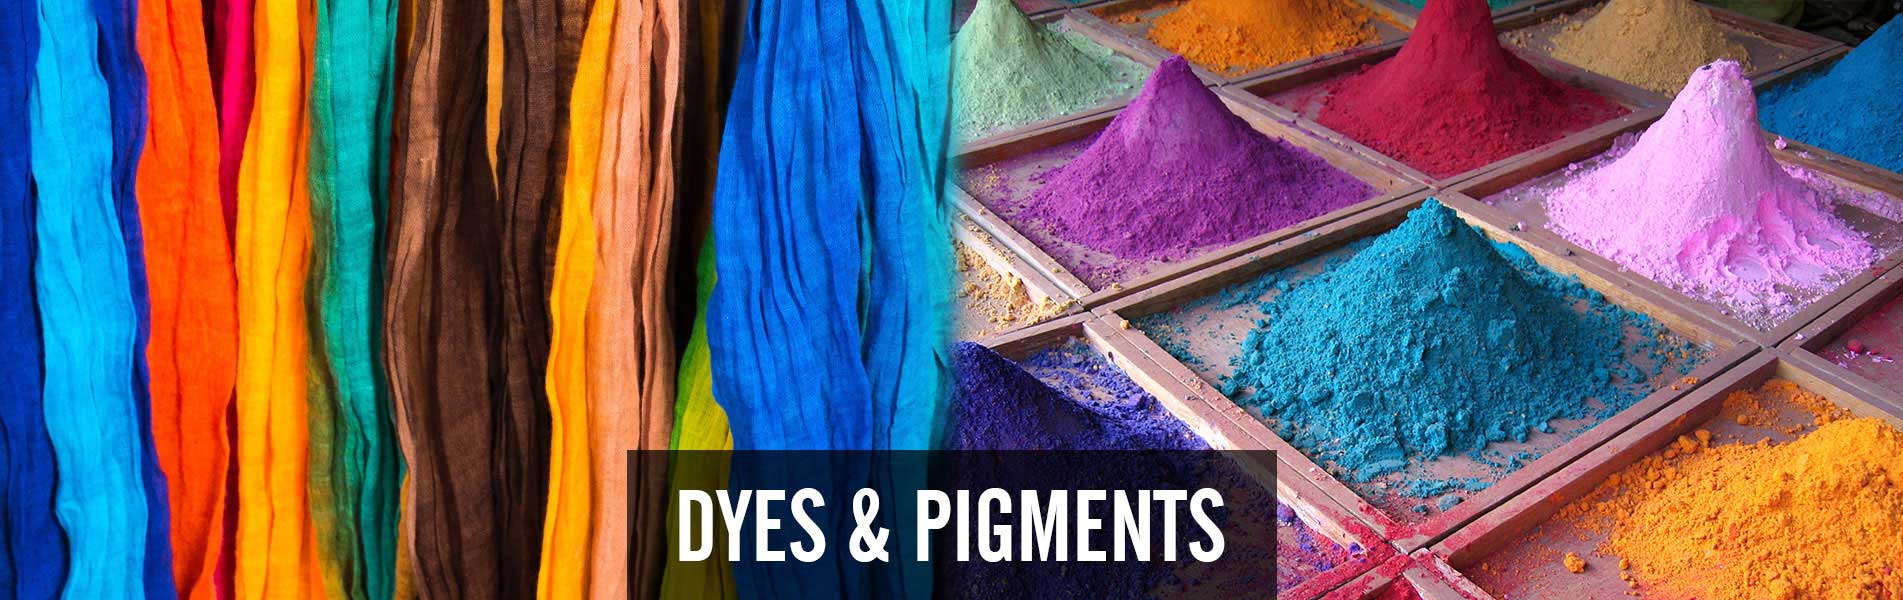 dyes-&-pigments